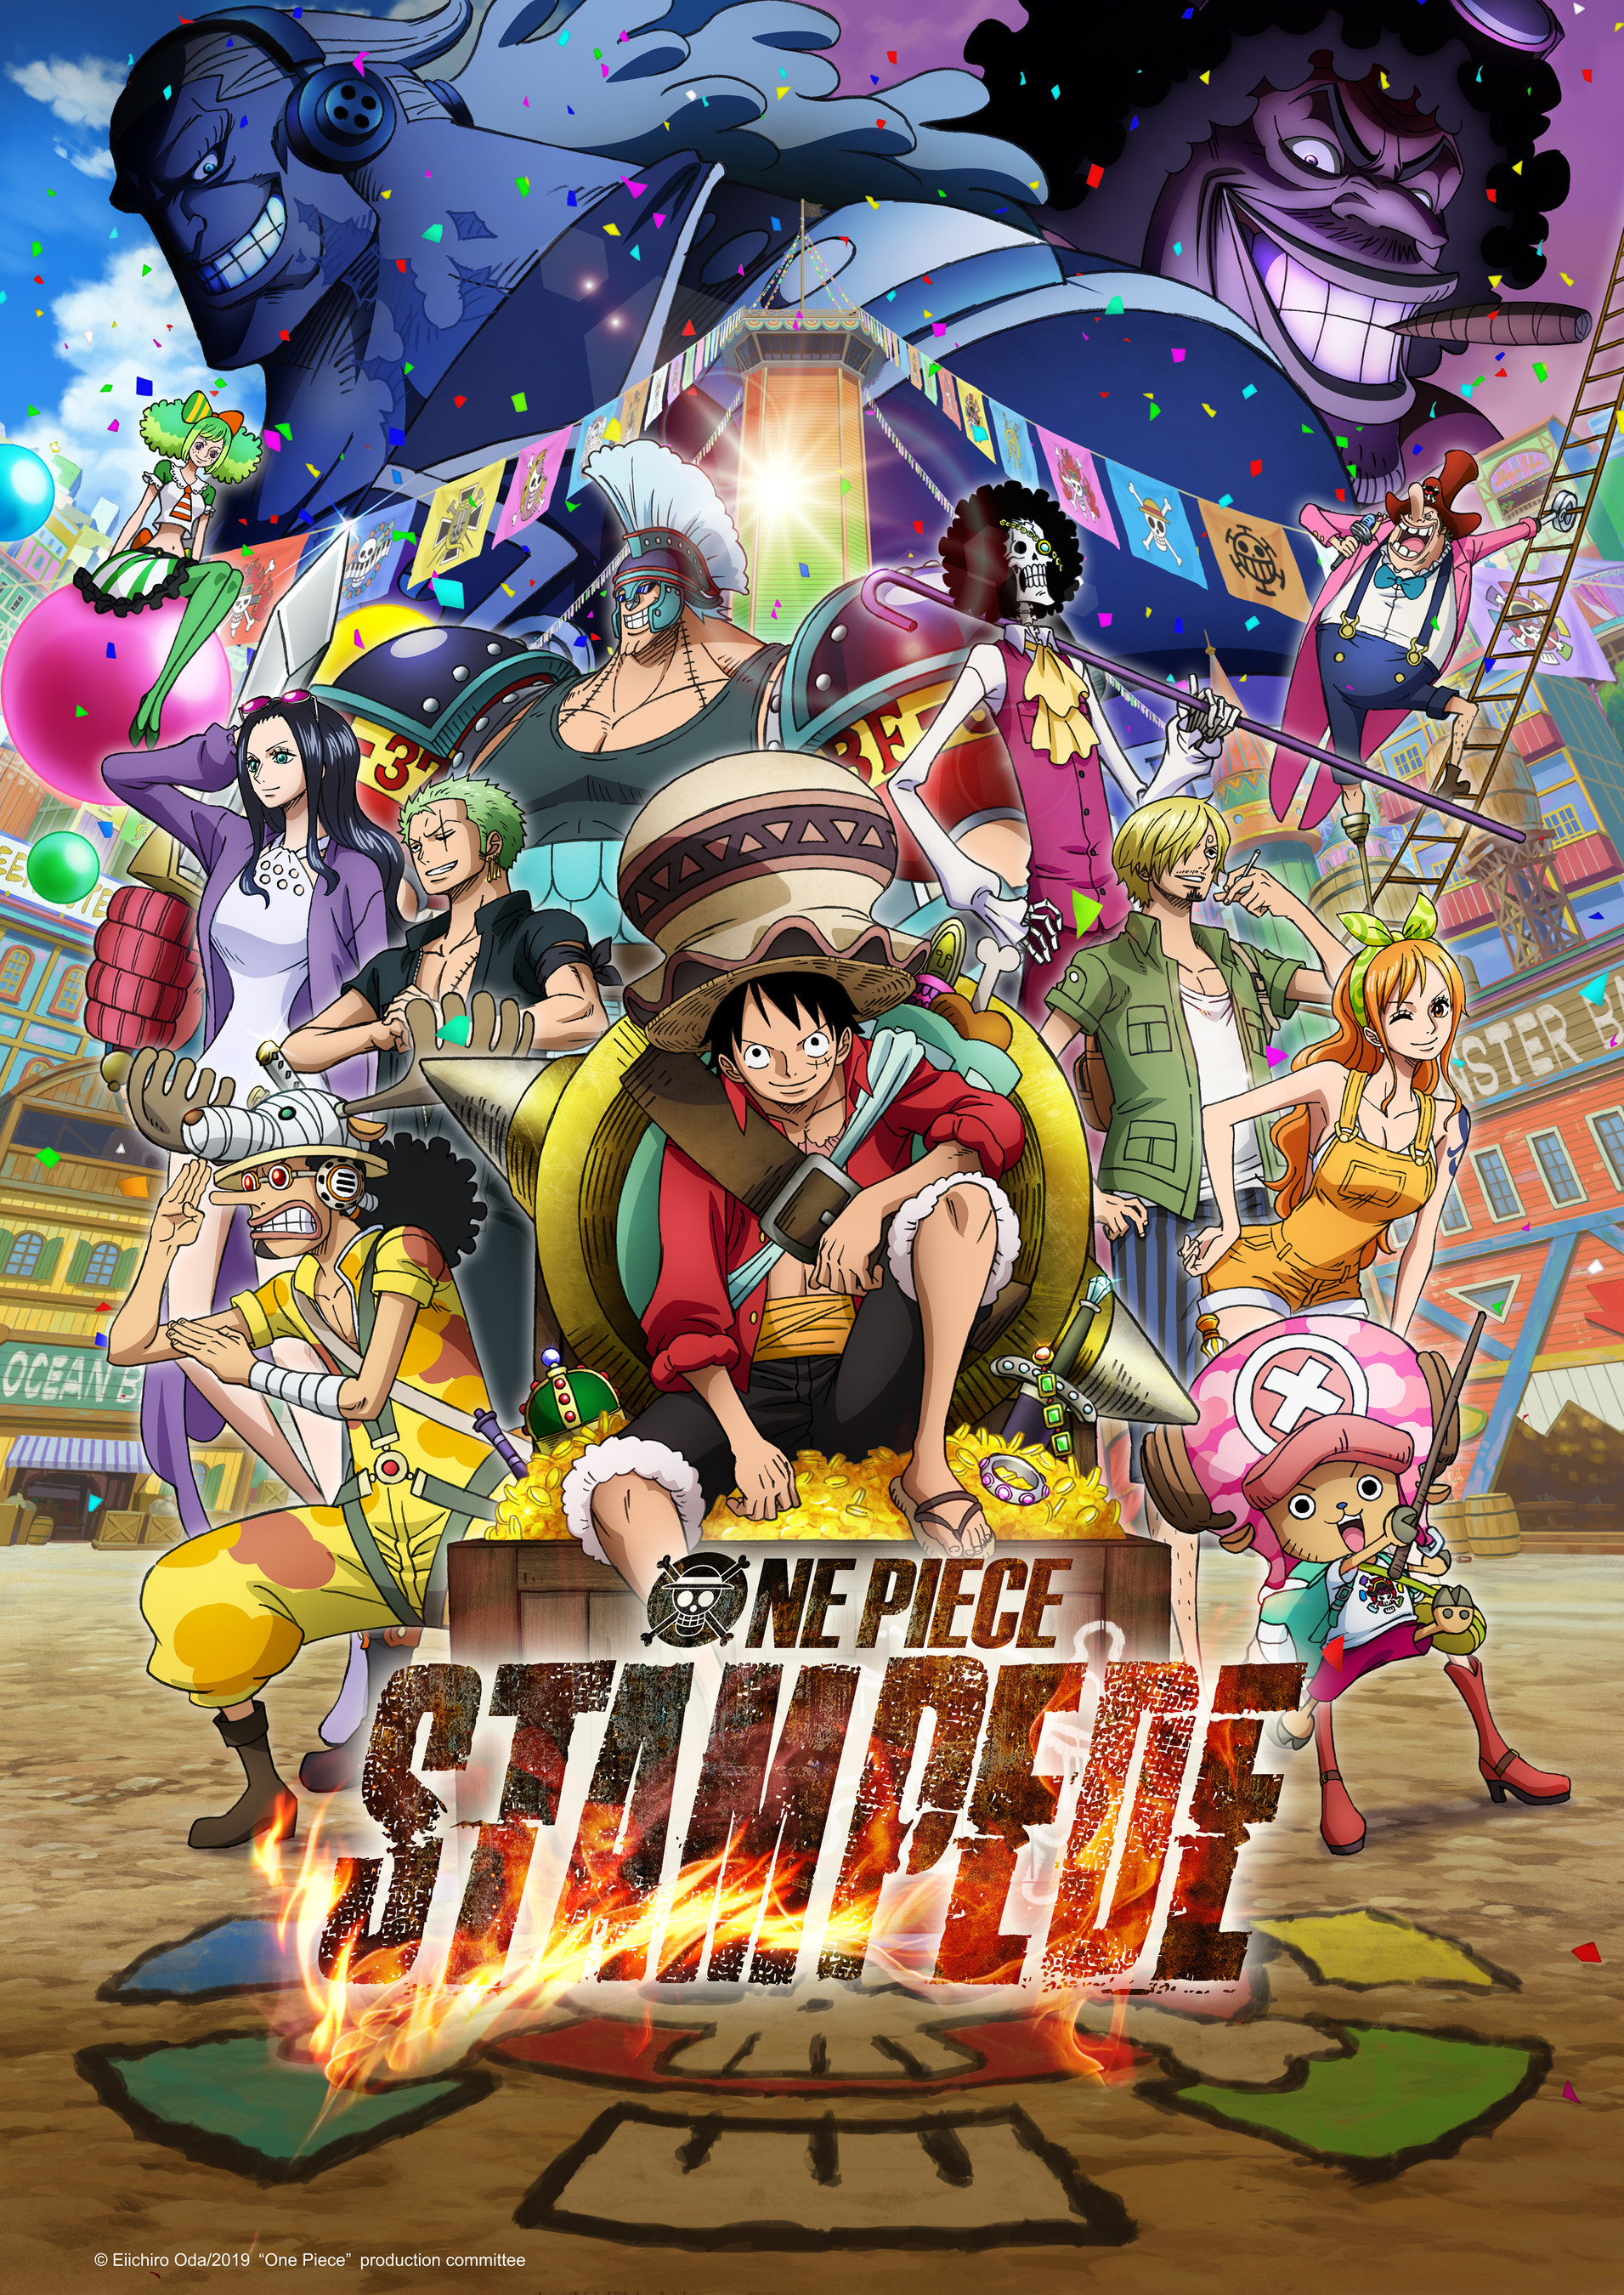 Bạn muốn tìm kiếm những hình nền chất lượng cao về bộ anime/manga One Piece? Combo 5 background One Piece là sự lựa chọn tuyệt vời cho bạn. Hình ảnh rực rỡ, sinh động, sẽ đem đến cho bạn những trải nghiệm tuyệt vời nhất khi sử dụng điện thoại hoặc máy tính của mình.